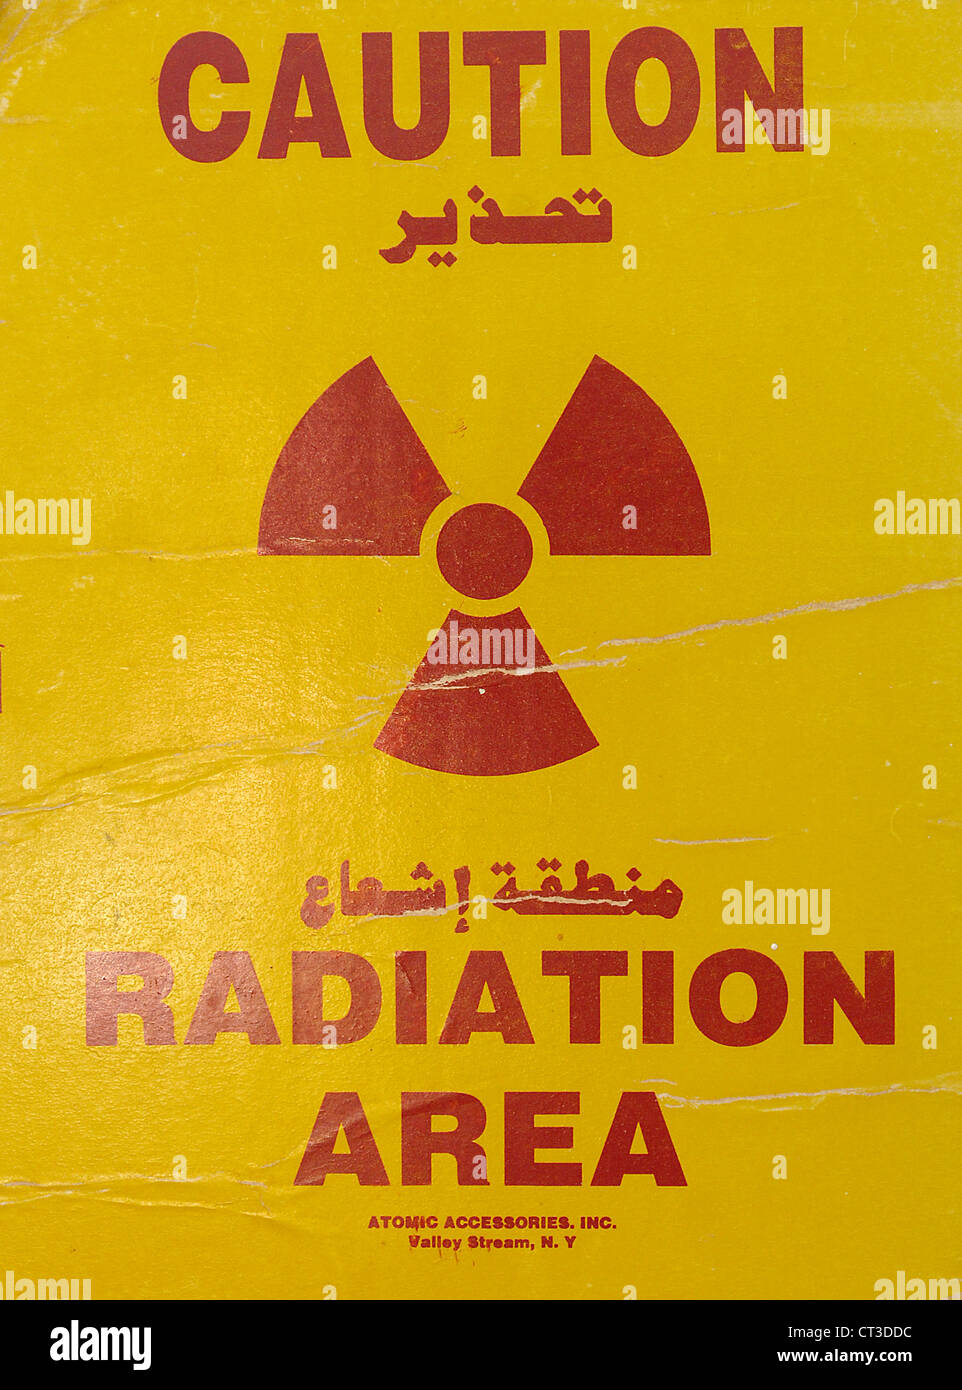 Vorsicht; Strahlung Bereich Warnzeichen. Stockfoto